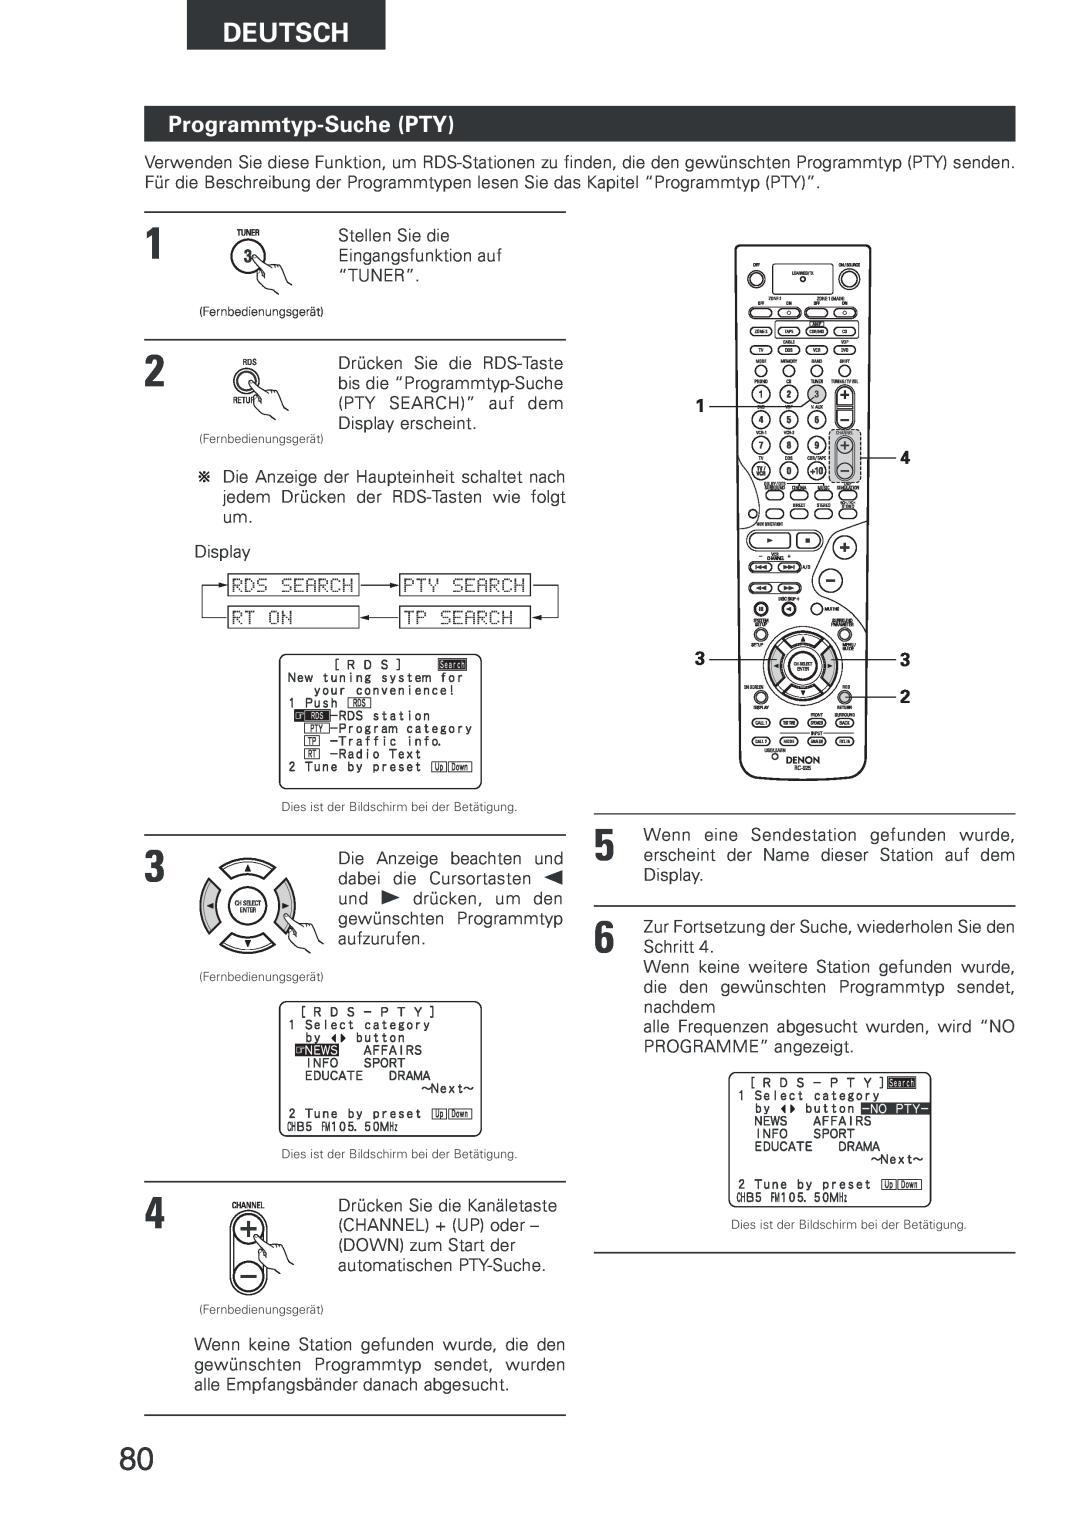 Denon AVR-2803 manual Programmtyp-Suche PTY, Deutsch 